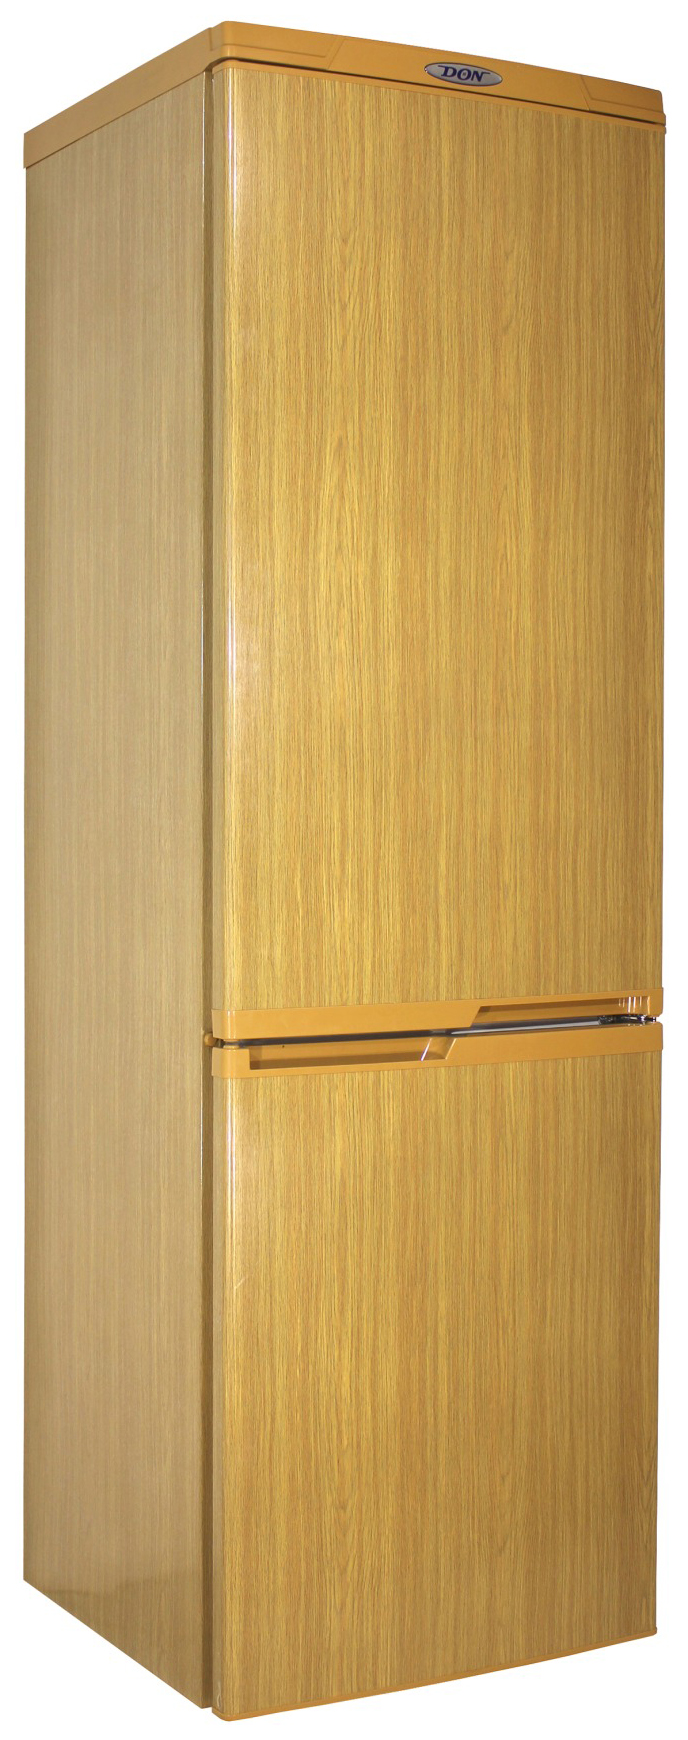 Холодильник DON R 291 DUB коричневый холодильник olto rf 050 коричневый